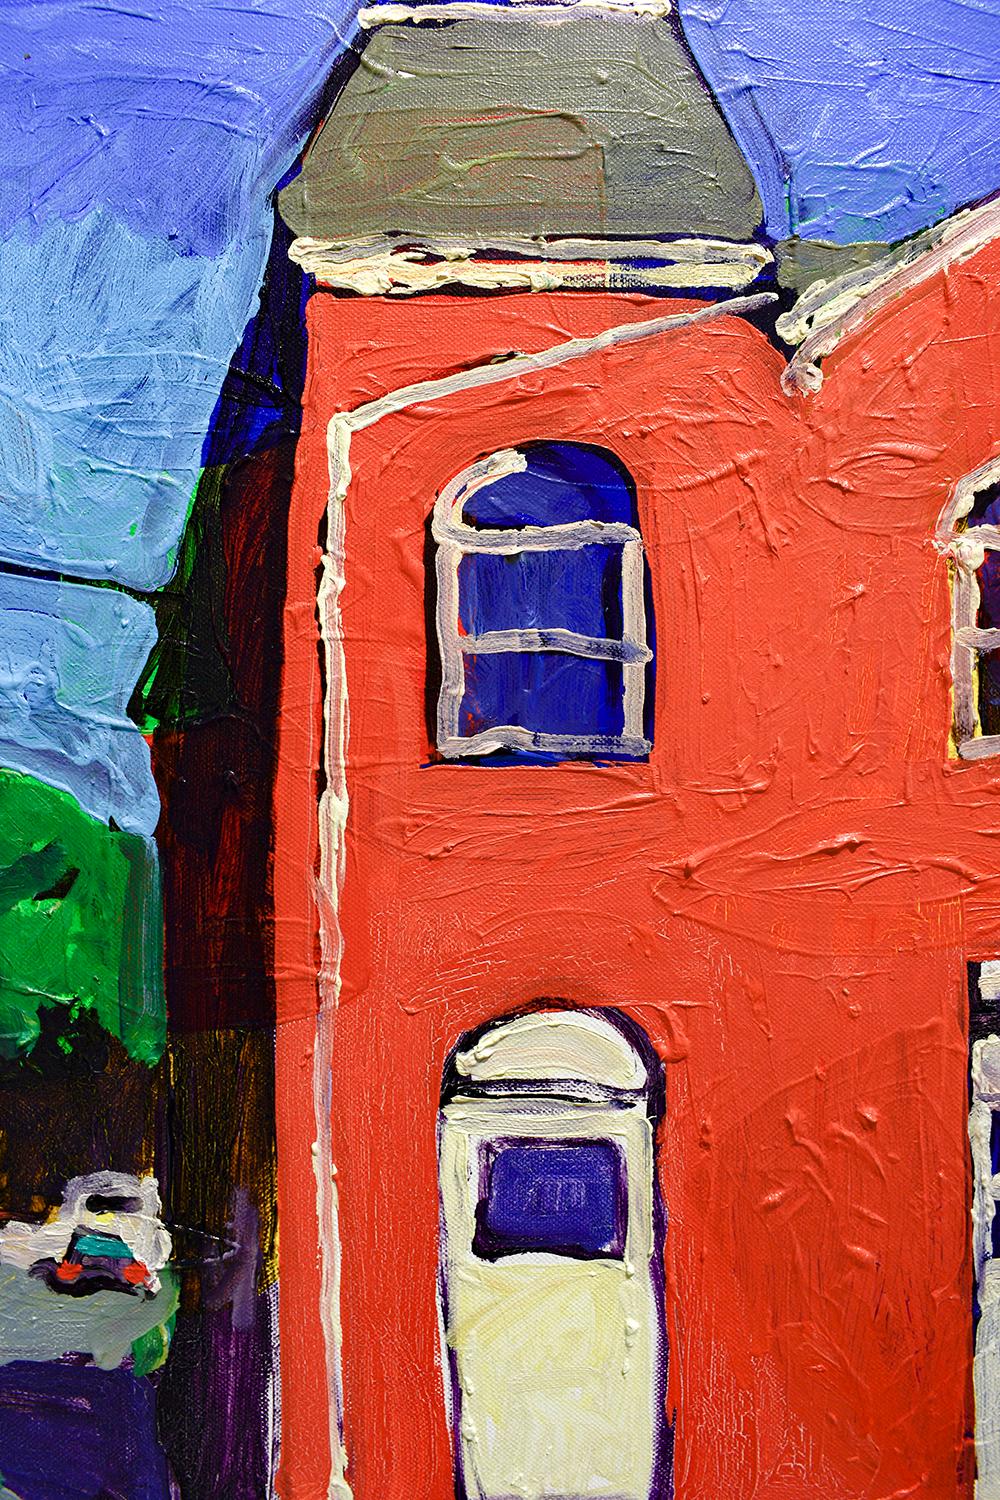 Macawamio Firehouse Athens, NY (peinture de paysage urbain de style fauviste sur toile) - Rose Still-Life Painting par Dan Rupe